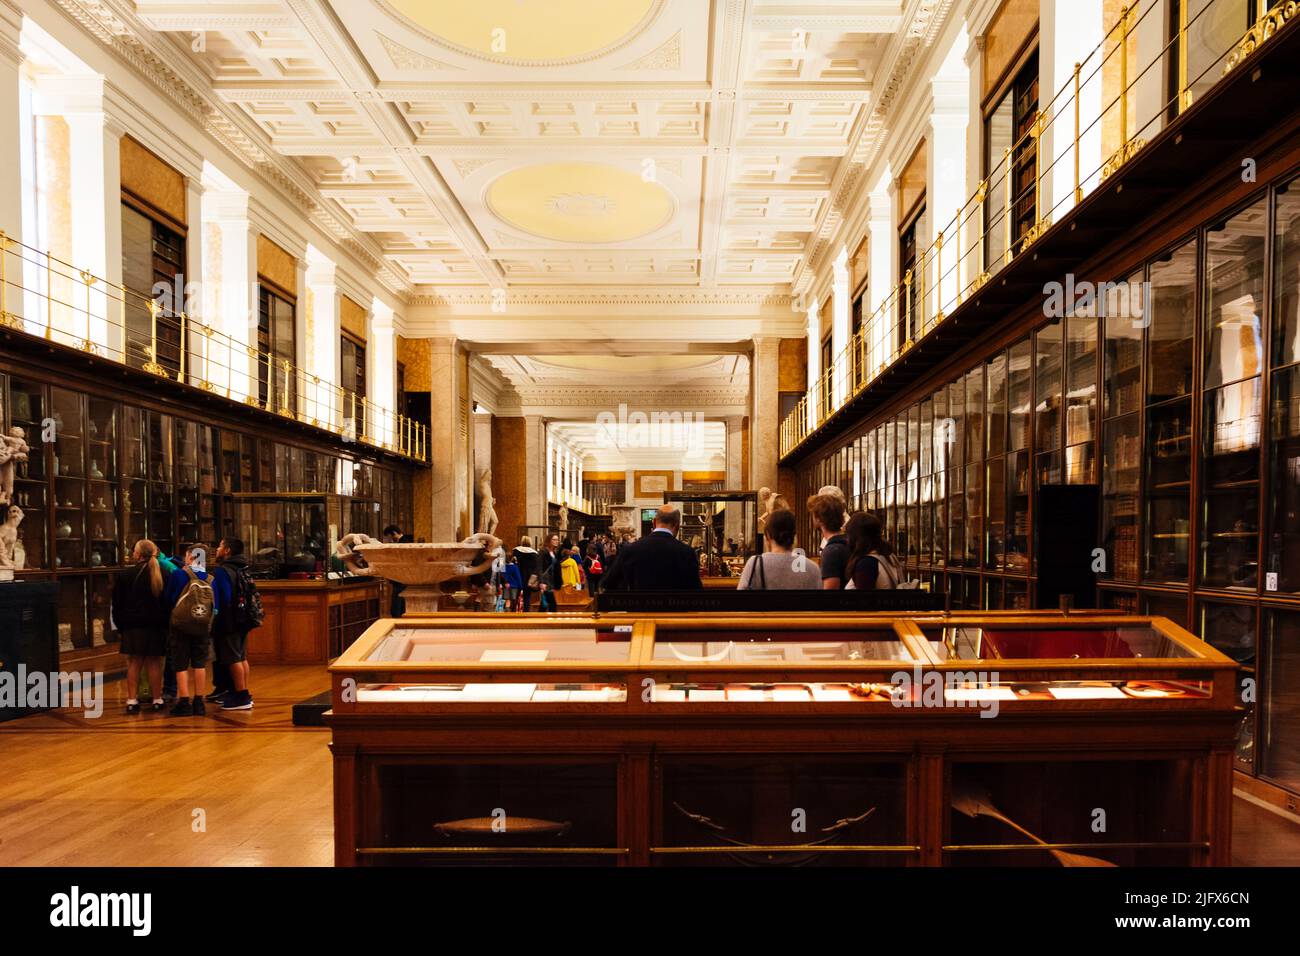 La Bibliothèque du Roi. Salle d'exposition. Le British Museum est un musée public dédié à l'histoire humaine, à l'art et à la culture situé dans la région de Bloomsbury Banque D'Images